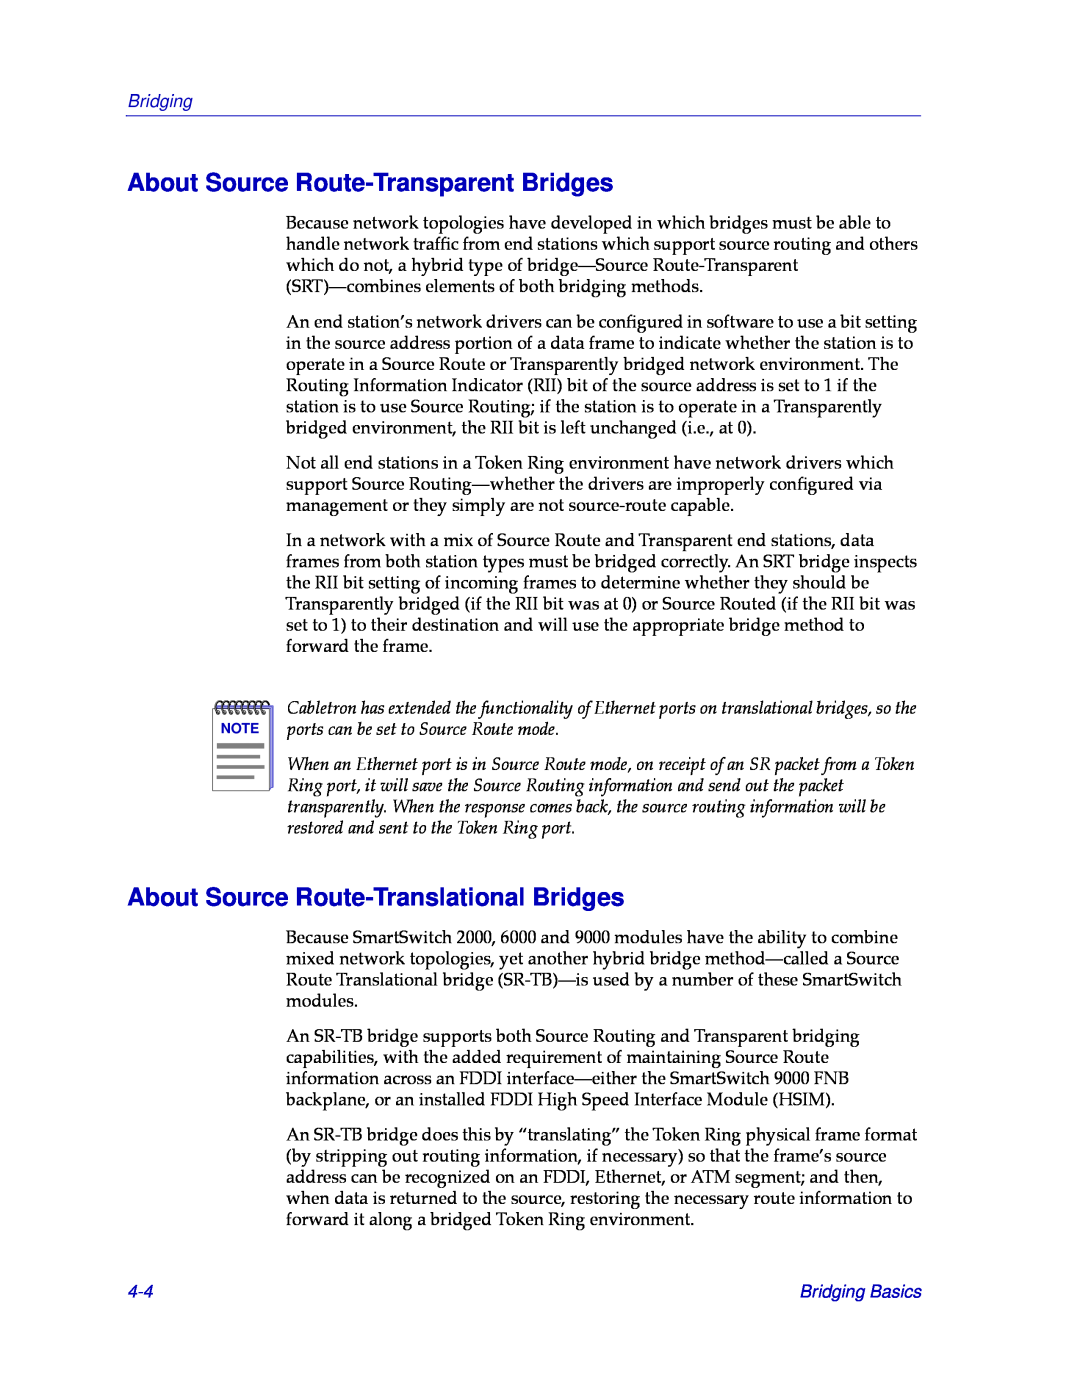 Cabletron Systems CSX400 manual About Source Route-Transparent Bridges, About Source Route-Translational Bridges, Bridging 